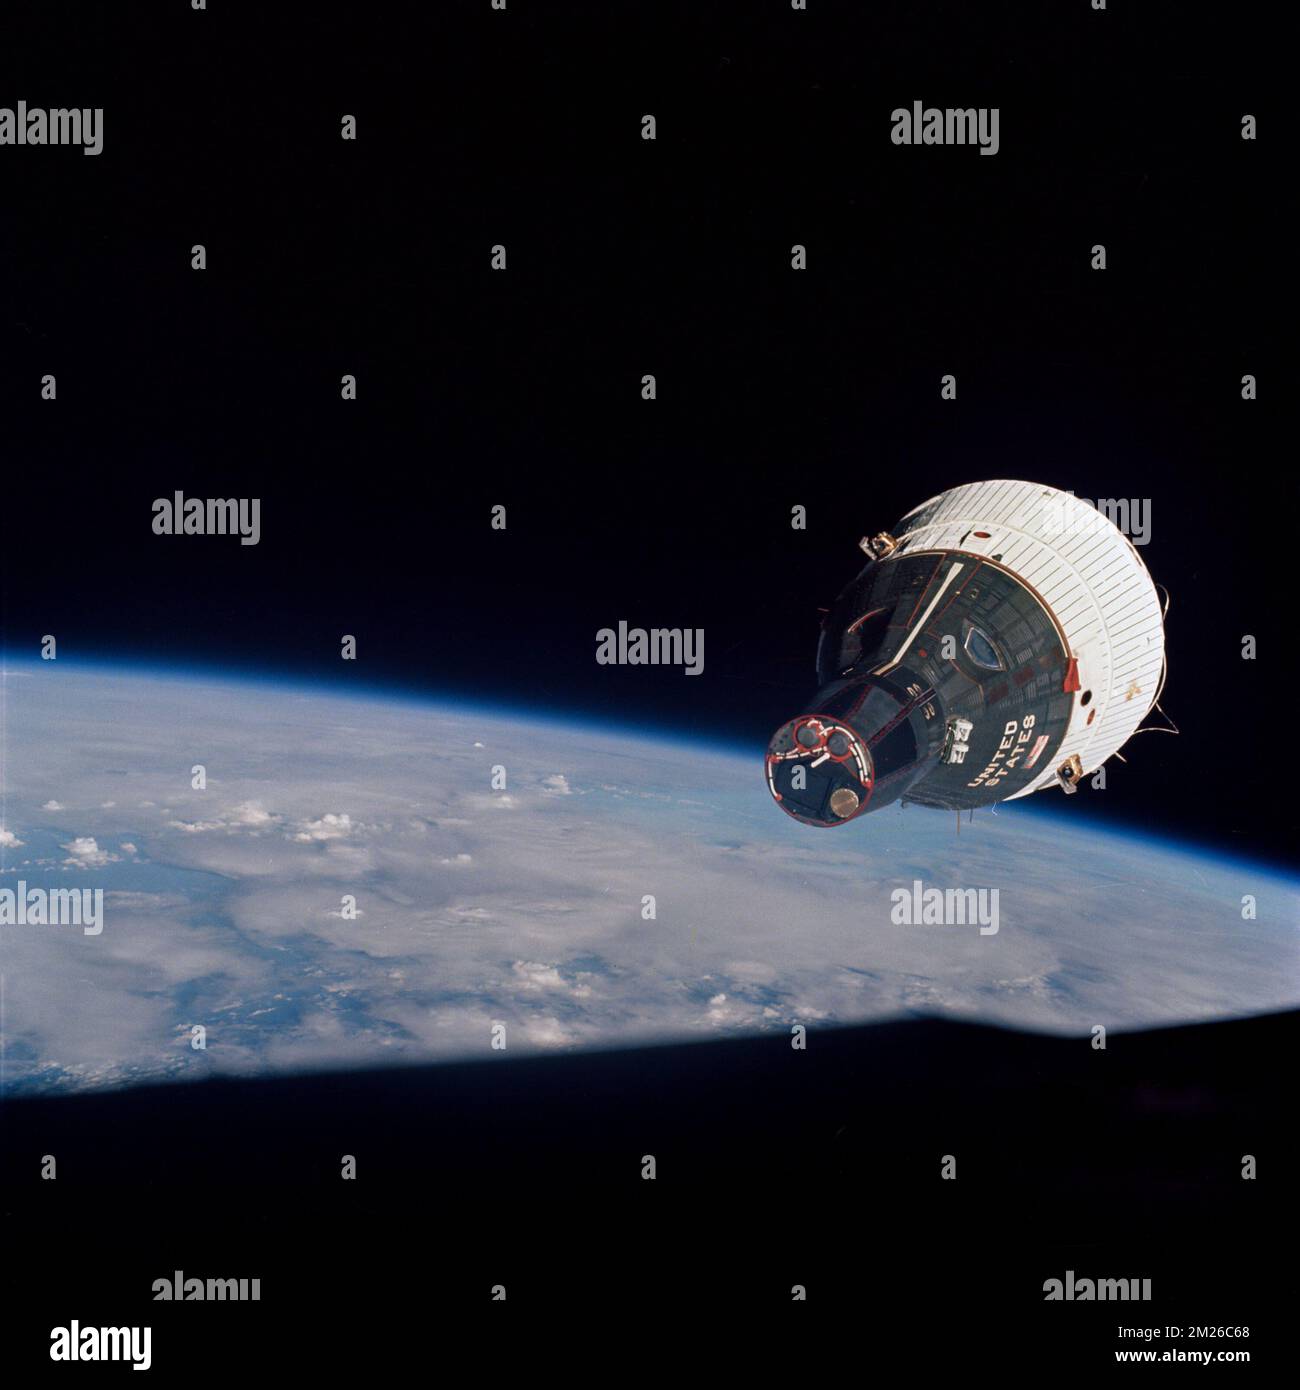 Atmosphère terrestre. 13th décembre 2022. Dans ce fichier photo du 15 décembre 1965, l'engin spatial Gemini-VII est vu à partir de l'engin spatial Gemini-VI-A lors de leur rendez-vous dans l'espace. Les deux engins spatiaux sont à environ 43 pieds l'un de l'autre. Tout comme Orion et la Station spatiale internationale aident la NASA à apprendre à se rendre sur Mars, le programme Gemini a défini et testé les compétences dont la NASA aurait besoin pour aller sur la Lune en 1960s et 1970s. Credit: NASA/ZUMA Press Wire Service/ZUMAPRESS.com/Alamy Live News Banque D'Images